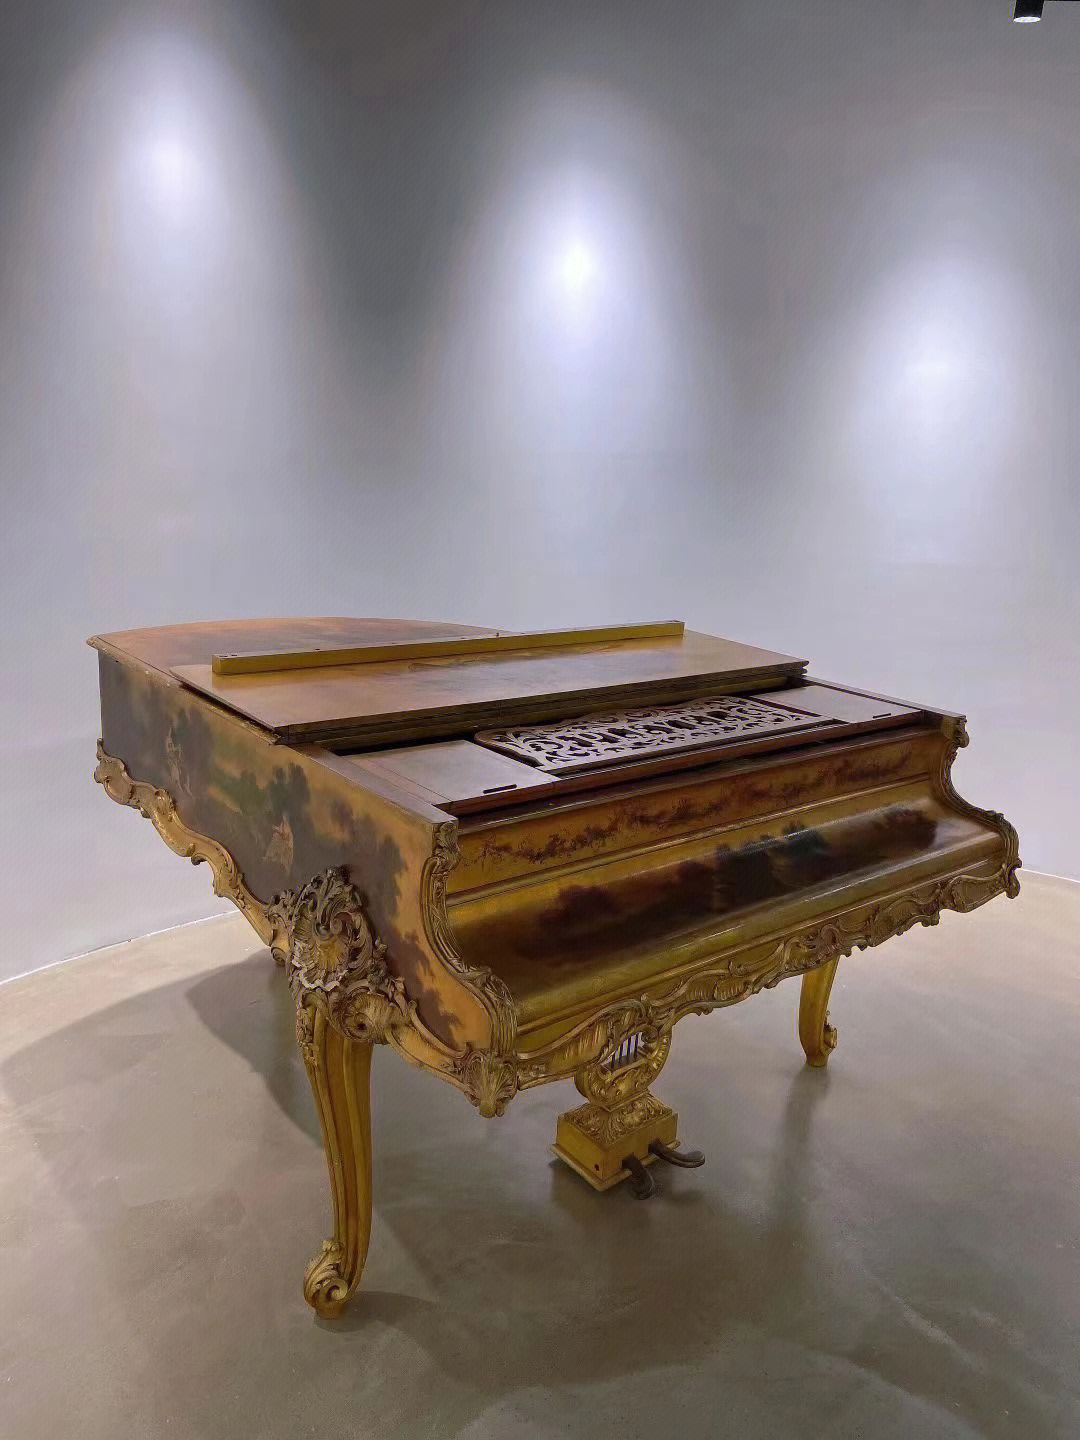 广州最特别的古钢琴博物馆